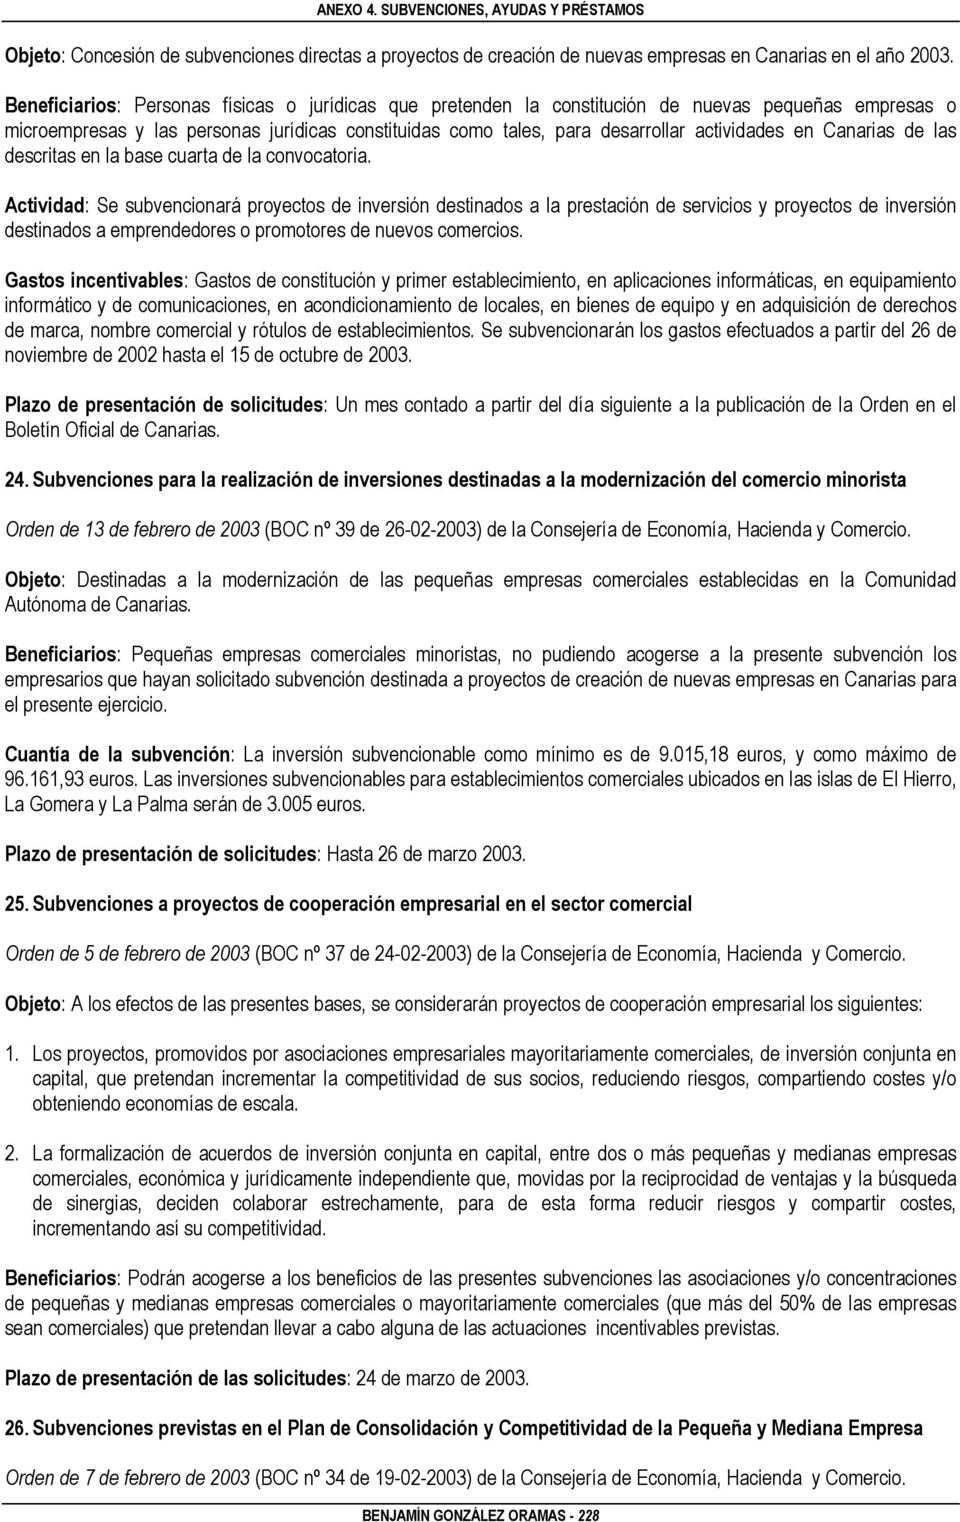 Canarias de las descritas en la base cuarta de la convocatoria.